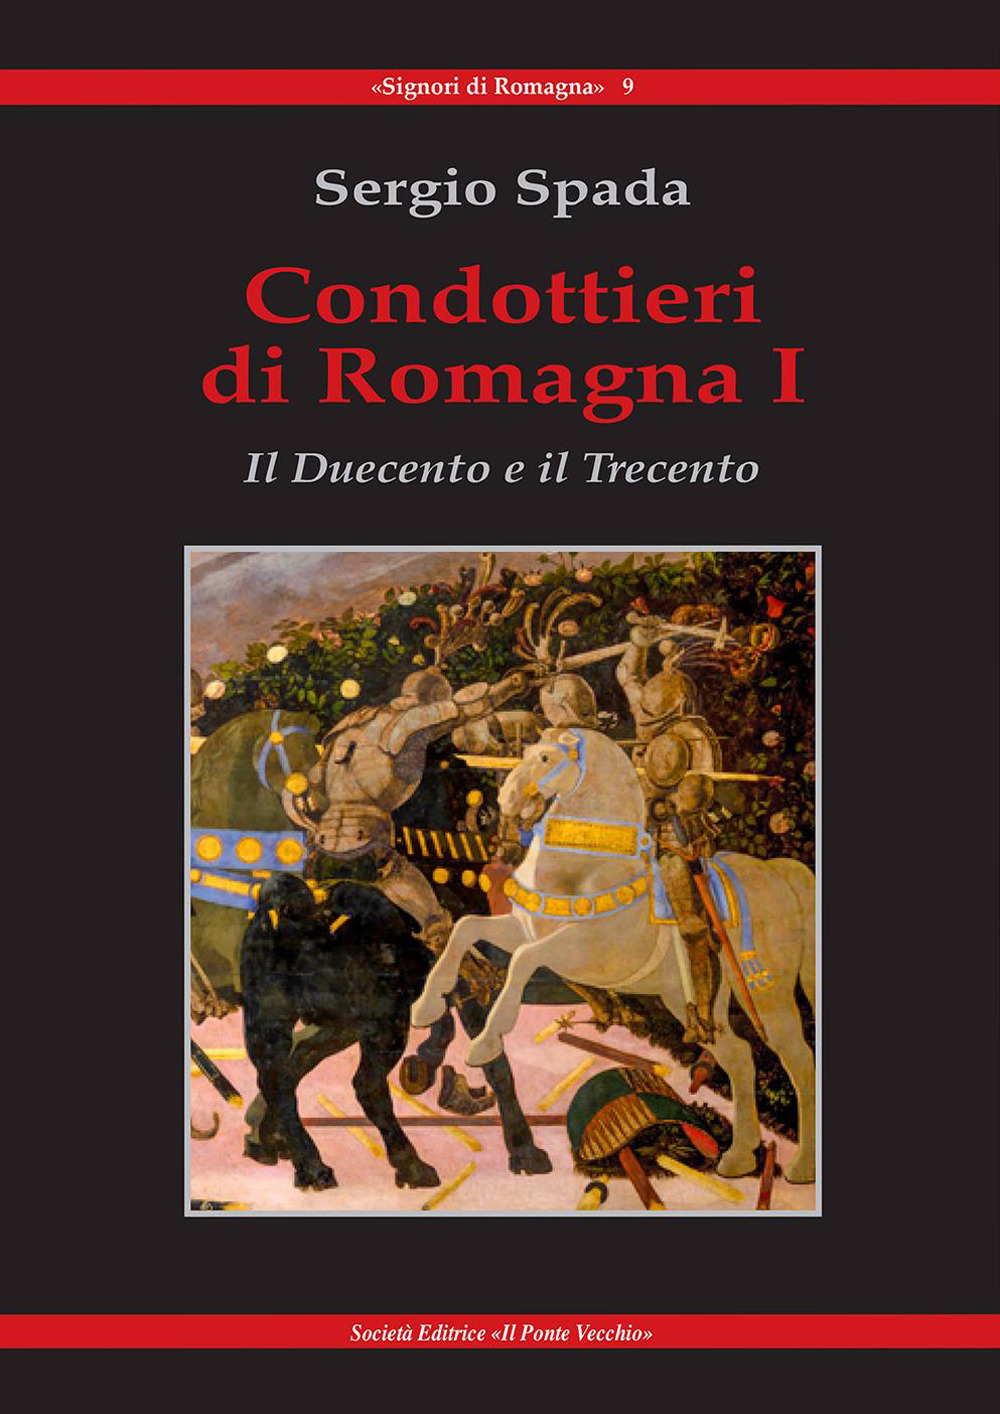 Condottieri di Romagna. Vol. 1: Il Duecento e il Trecento